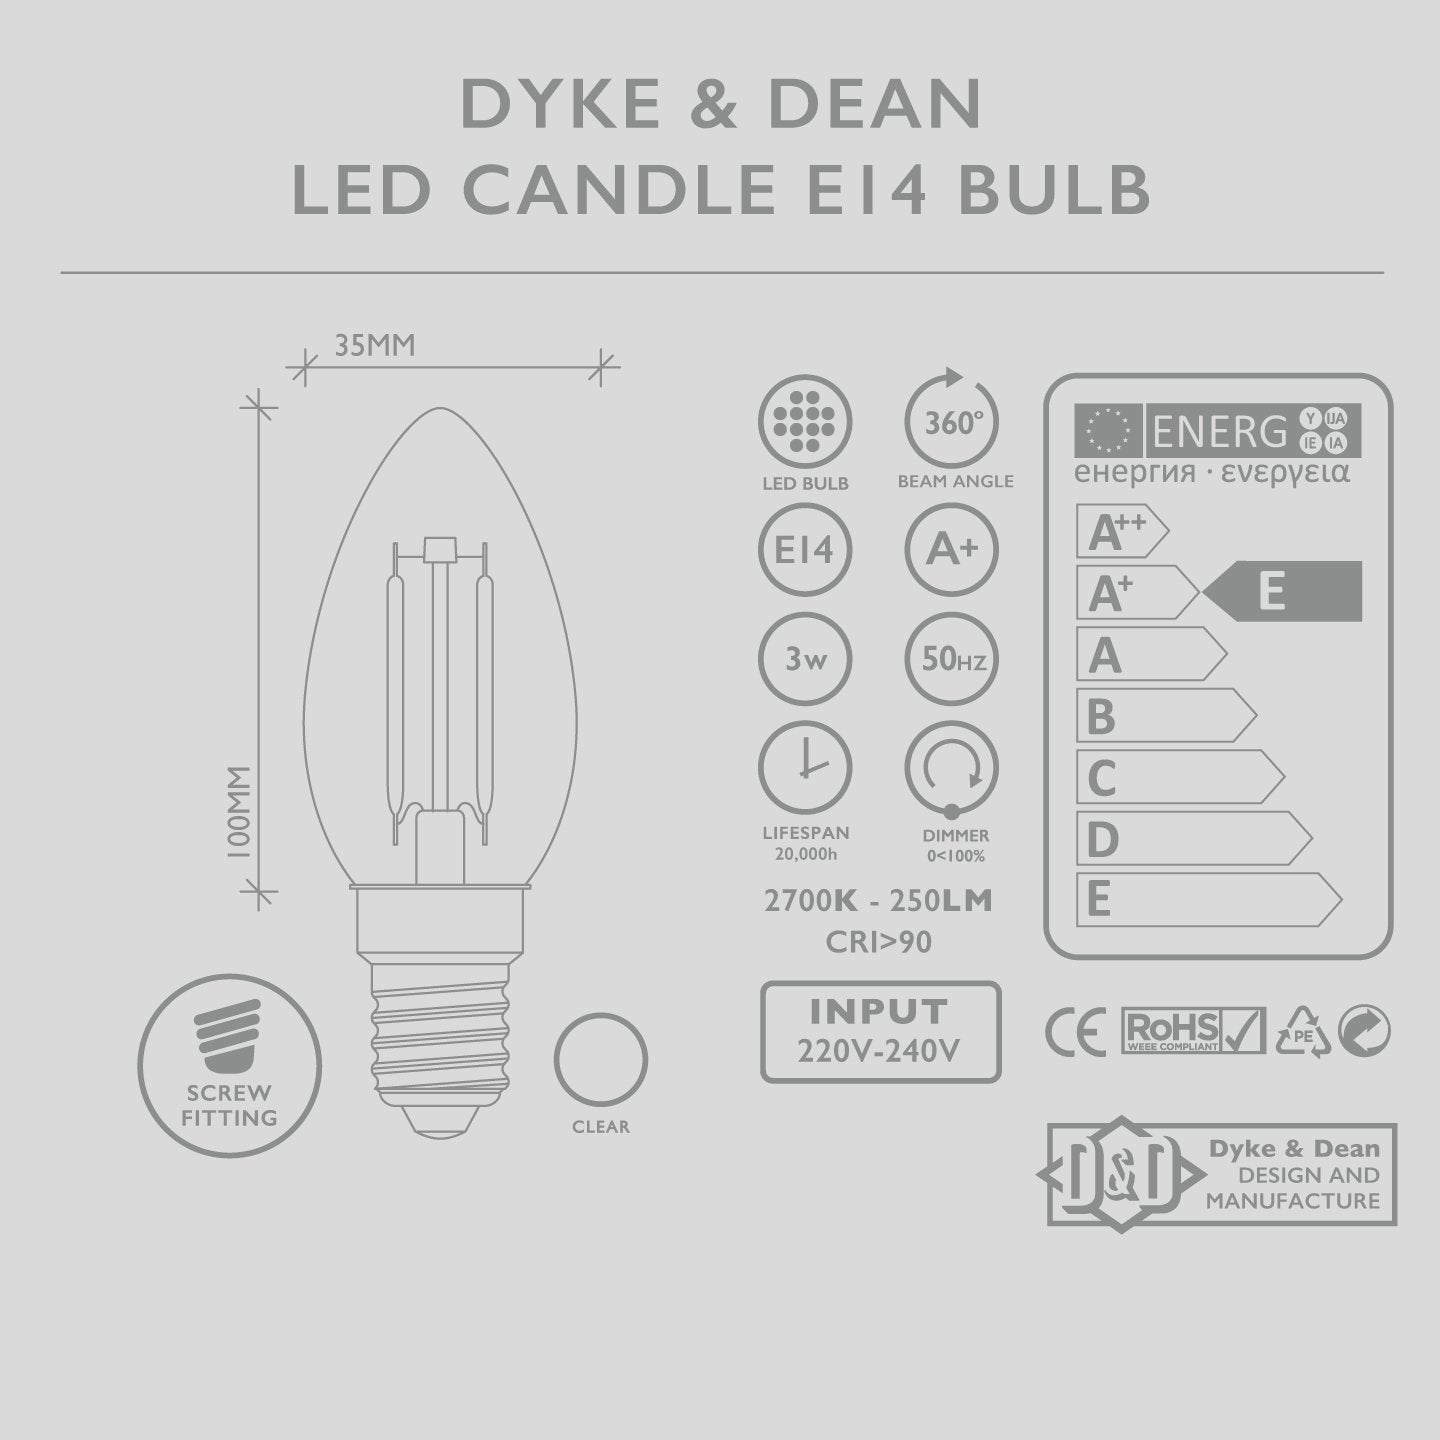 DYKE & DEAN LED CANDLE E14 BULB - DYKE & DEAN